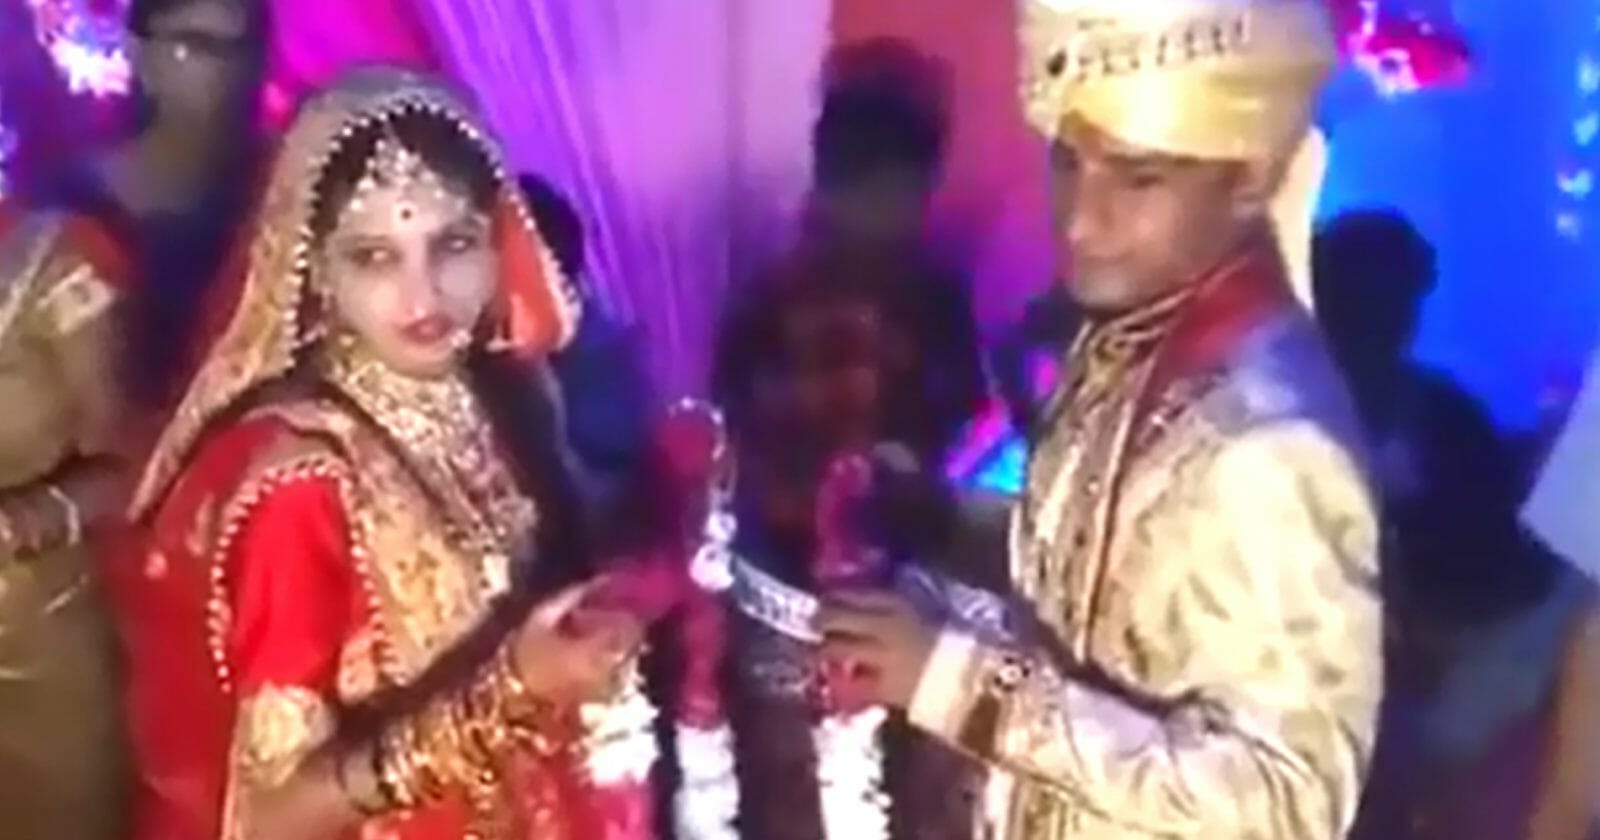 عروس تصفع رجلا في حفل زفافها في الهند watanserb.com